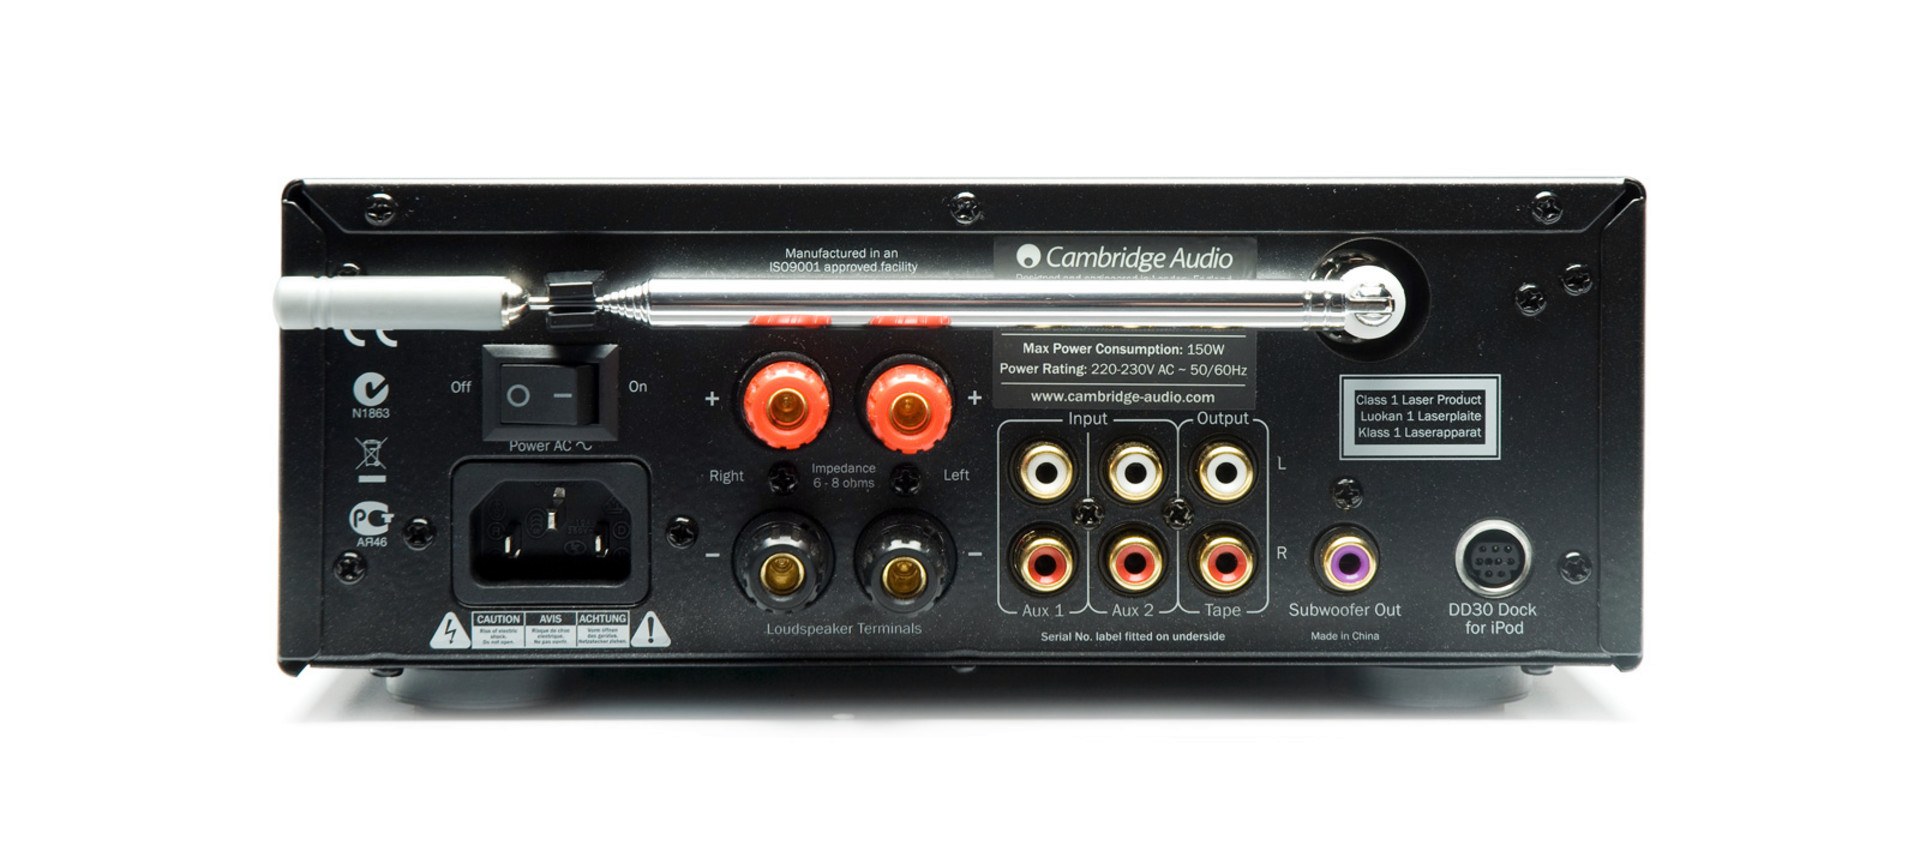 Включи какие аудио. Кембридж аудио стереоприемник. Усилитель Cambridge Audio a500. Усилитель Cambridge Azur 540r v2.0. Музыкальные центры Cambridge Audio.